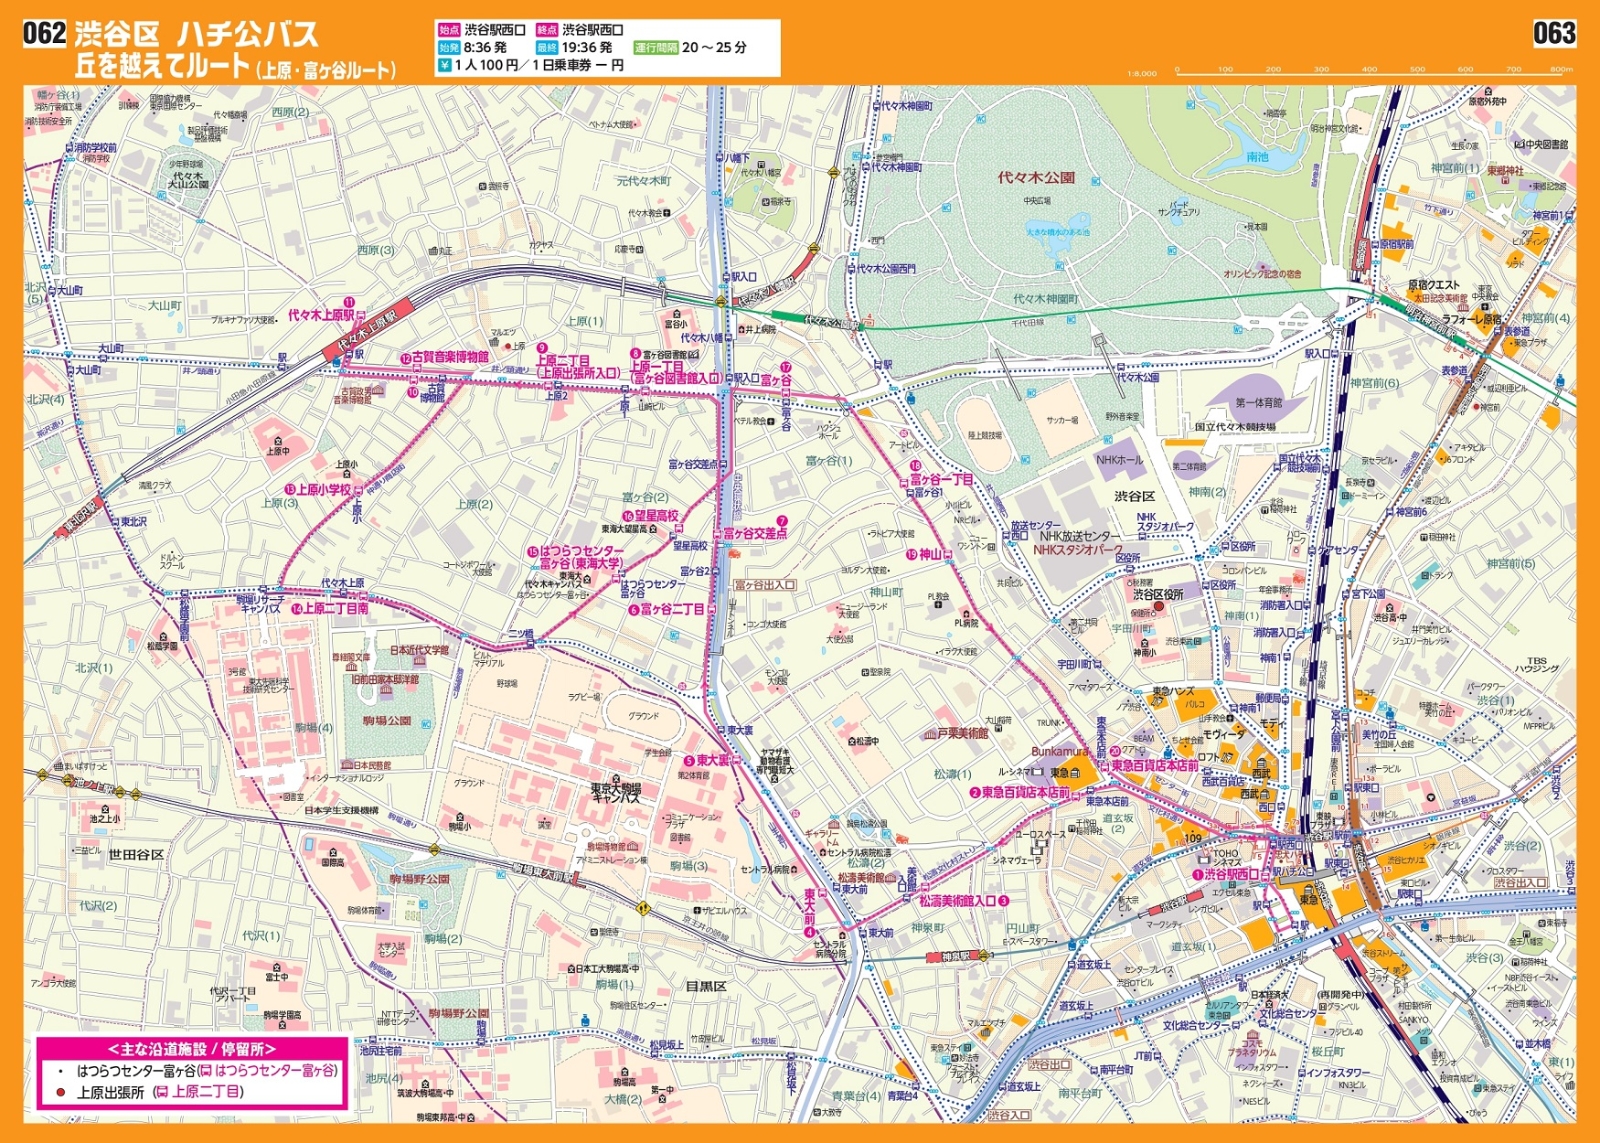 楽天ブックス 東京23区コミュニティバスガイド マップ 1路線1図だから断然分かりやすい 本